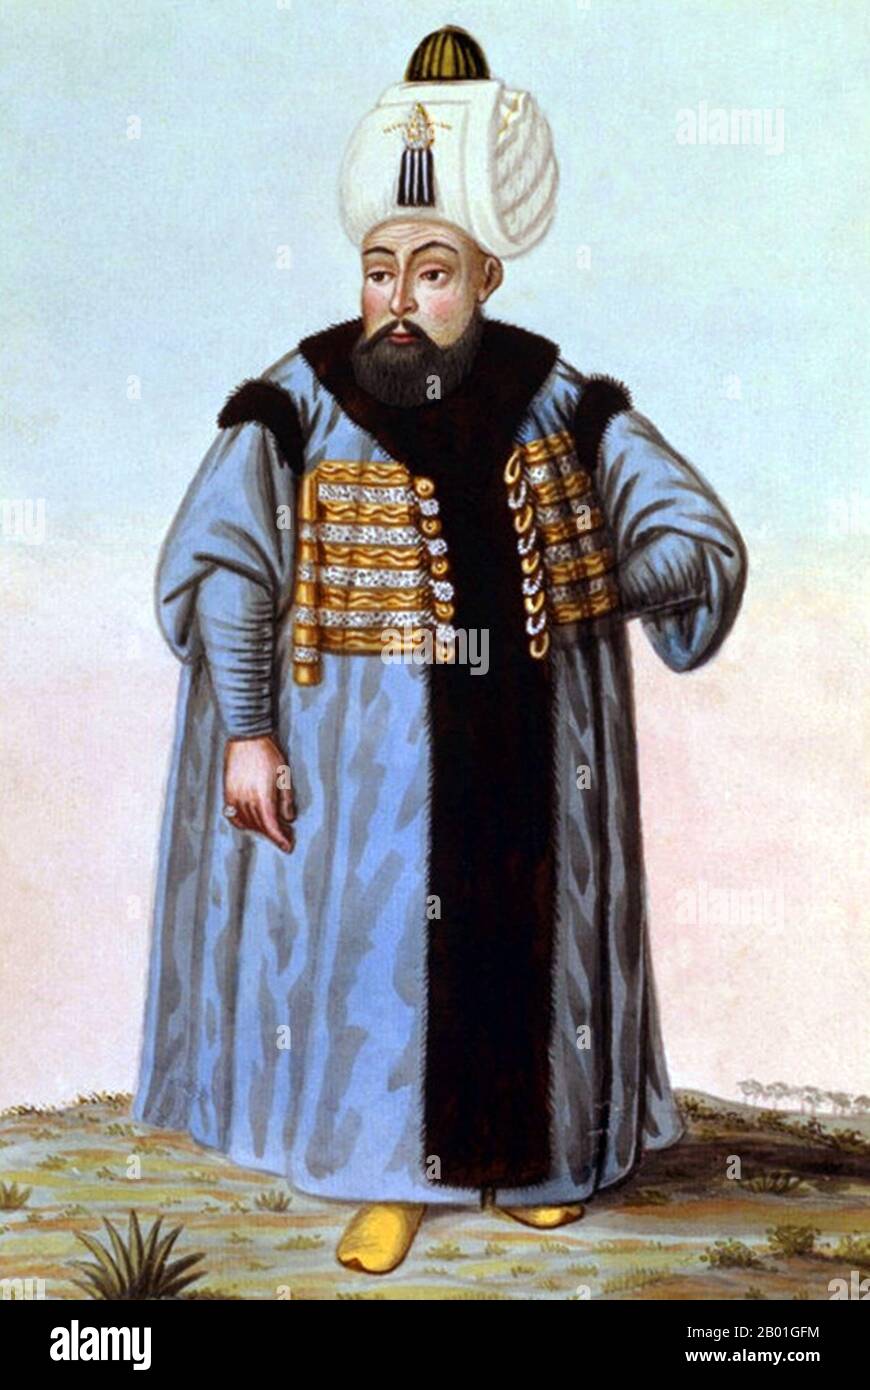 Turchia: Selim II (28 maggio 1524 - 15 dicembre 1574), Sultano dell'Impero Ottomano. Acquerello dipinto da John Young (1755-1825), 1815. Selim II nacque a Istanbul, figlio di Suleiman il magnifico e della sua quarta moglie ruteniana Hürrem Sultan (Roxelana). Le spedizioni militari nell'Hejaz e nello Yemen ebbero successo, ma la sua conquista di Cipro nel 1571 portò alla disfatta navale contro Spagna e Venezia nella battaglia di Lepanto nello stesso anno, liberando il Mar Mediterraneo dai corsari. Le flotte distrutte dell'Impero furono presto restaurate in soli sei mesi. Foto Stock